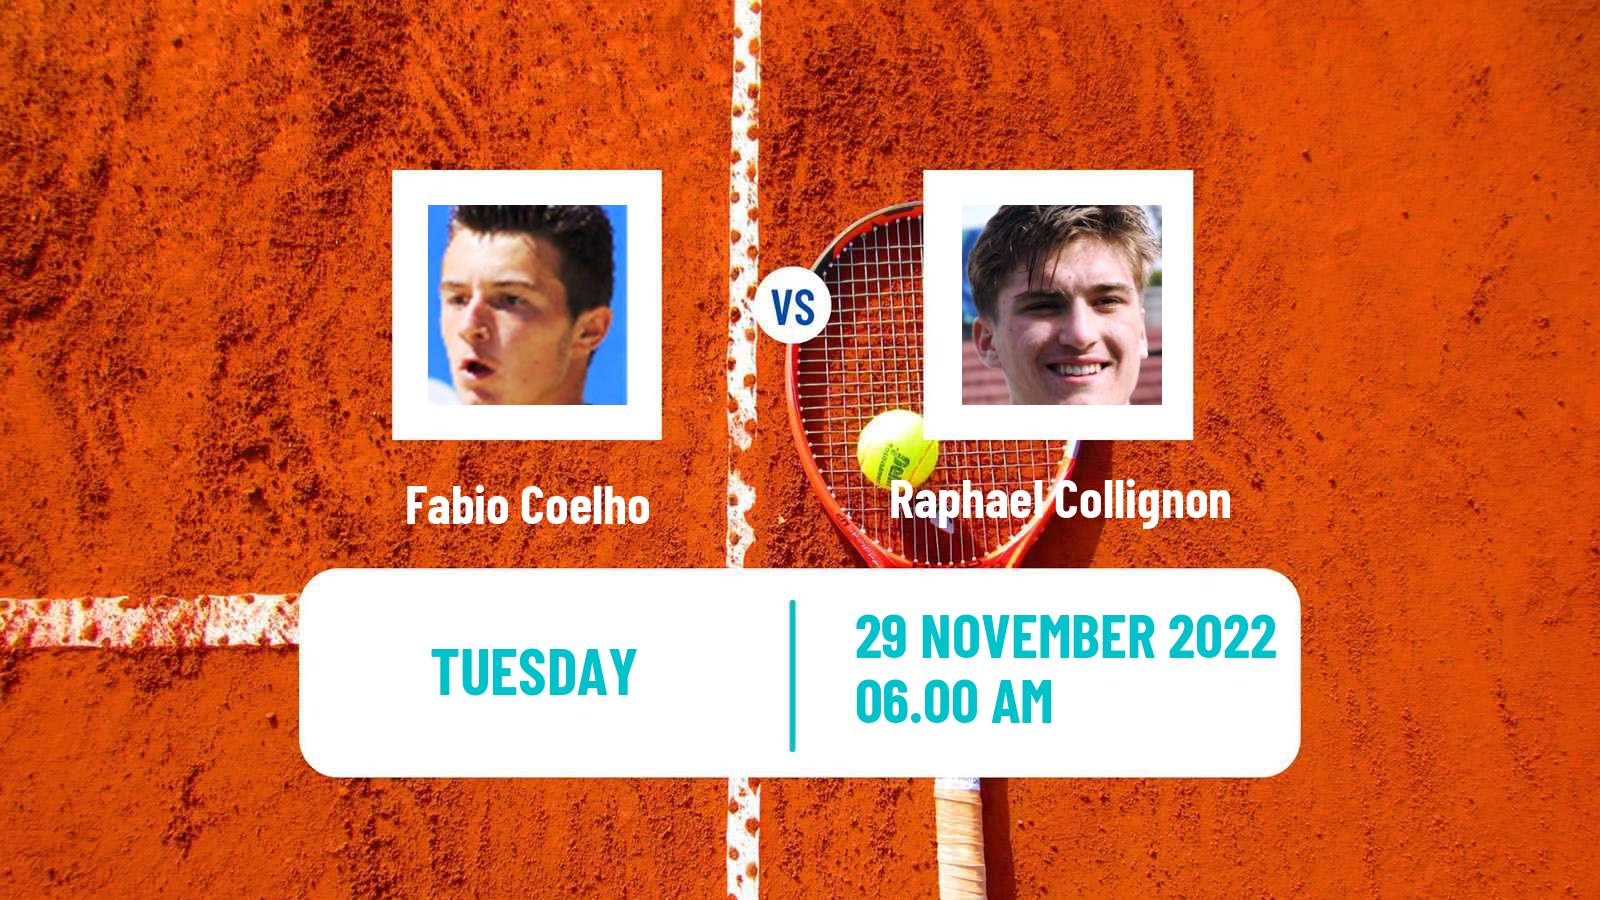 Tennis ATP Challenger Fabio Coelho - Raphael Collignon